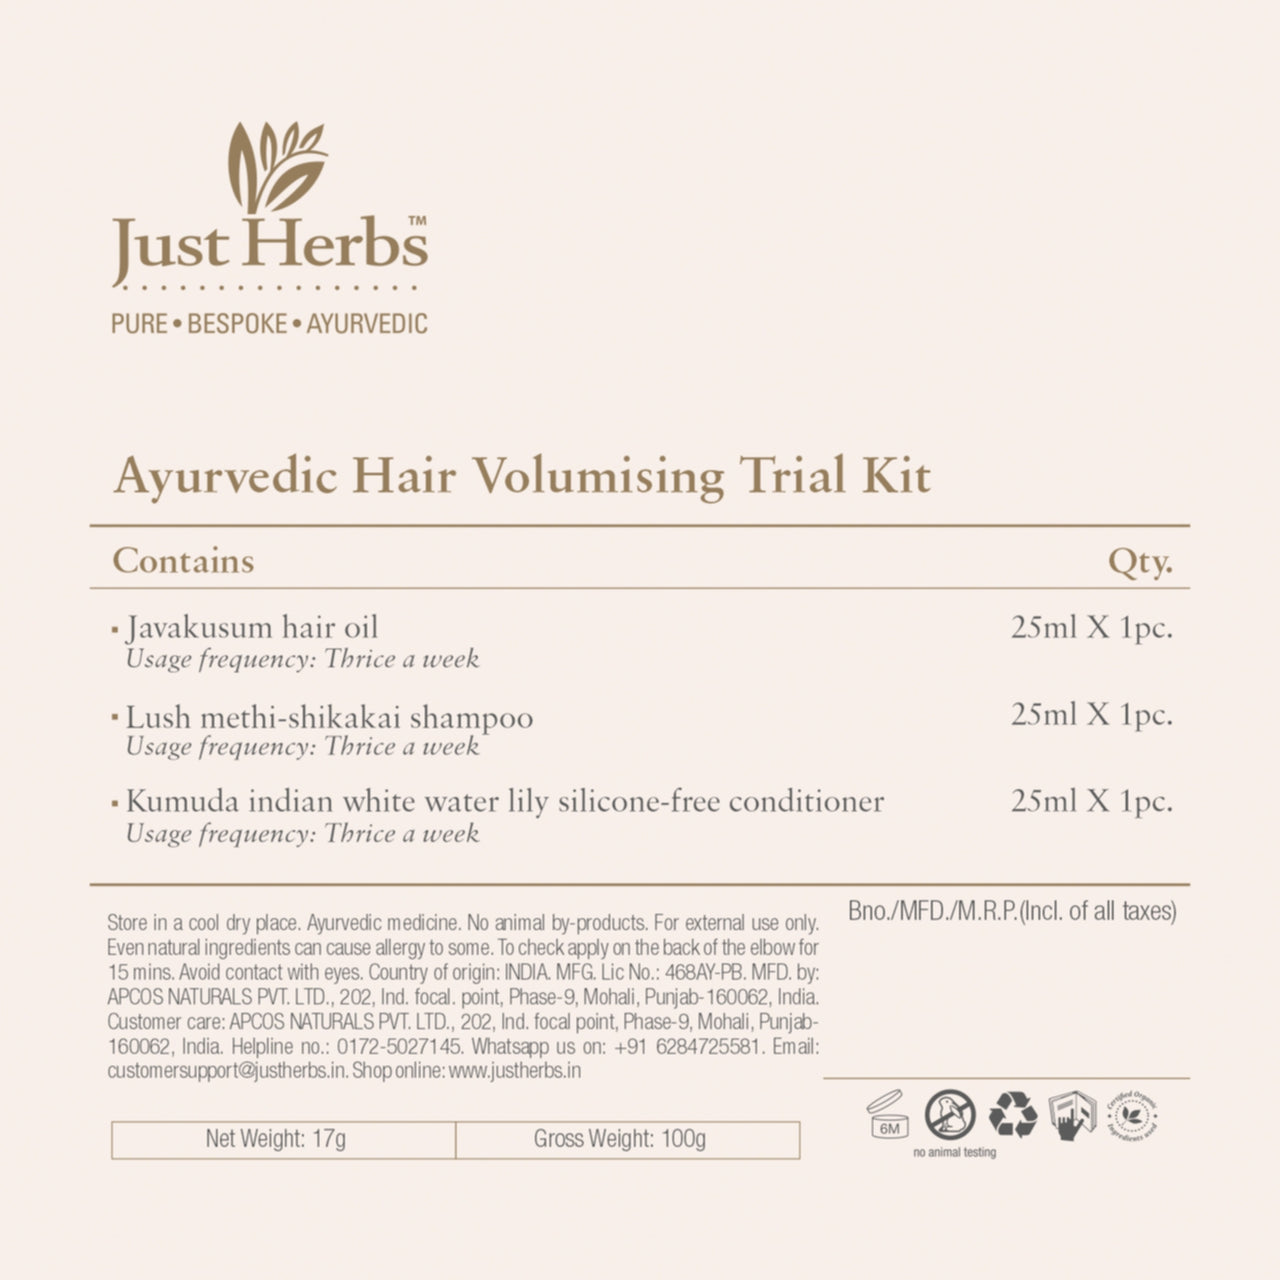 Ayurvedic Hair Volumising Trial Kit